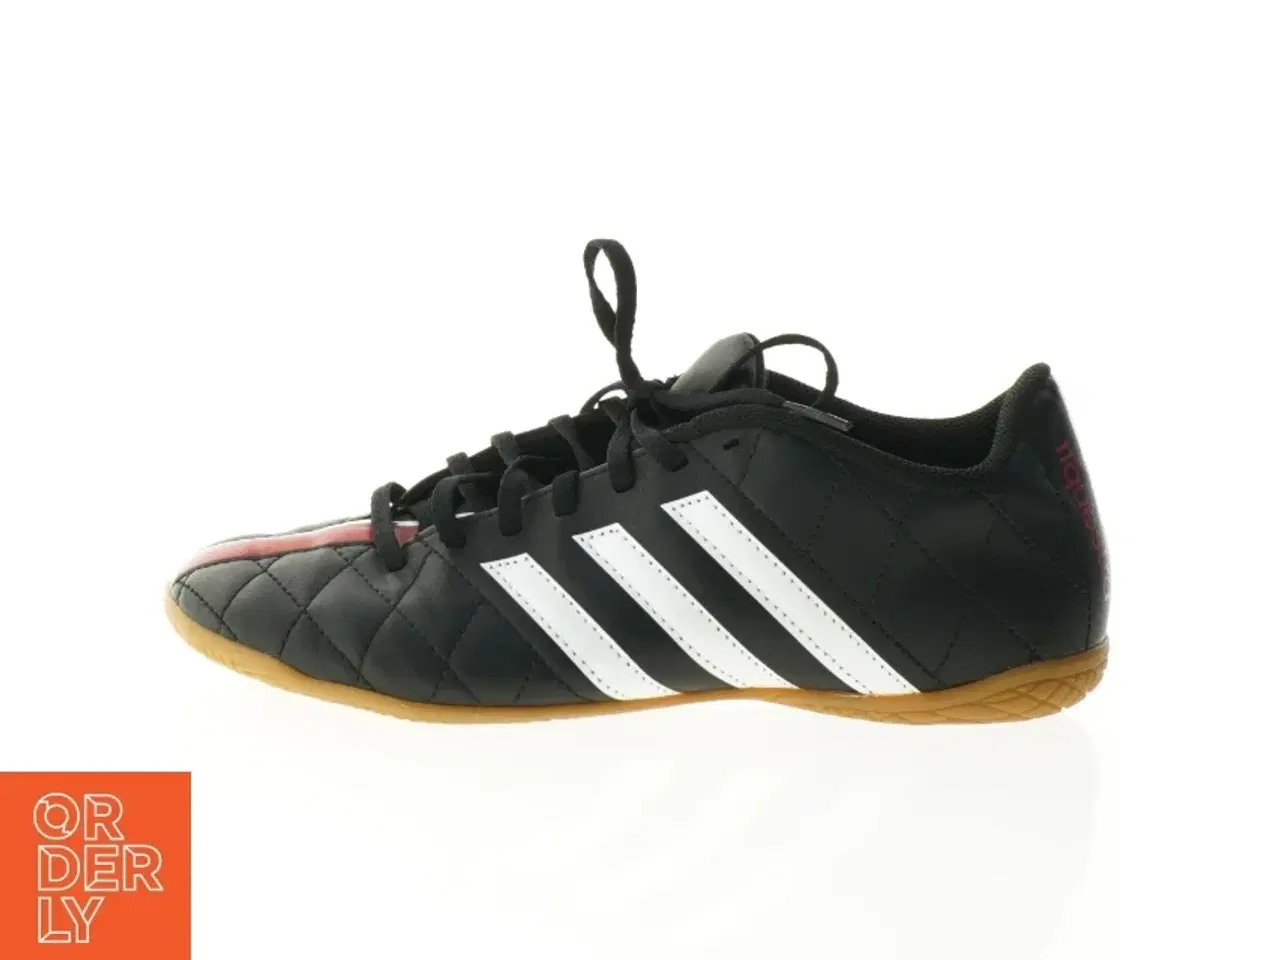 Billede 1 - Sko fra Adidas / fodboldstøvle indendørs (str. 40 og 2 tredje del)